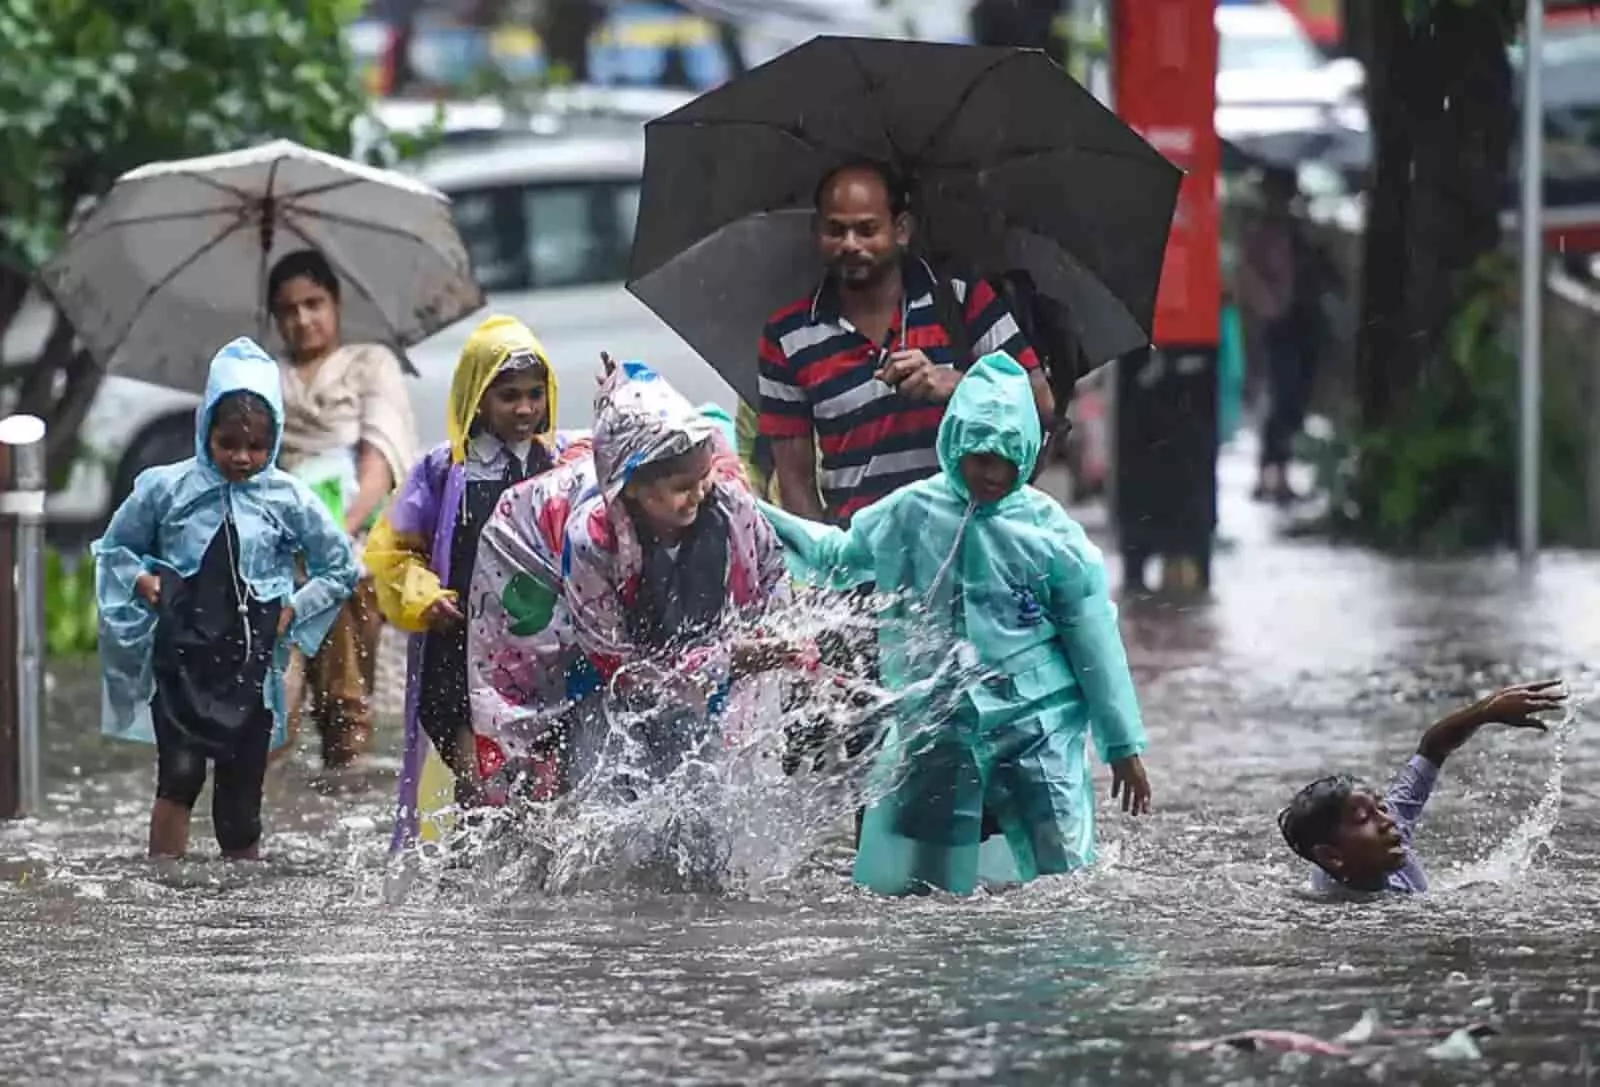 MUMBAI में भारी बारिश का ORANGE ALERT जारी, सभी स्कूलों, कॉलेजों और शैक्षणिक संस्थानों में छुट्टी घोषित